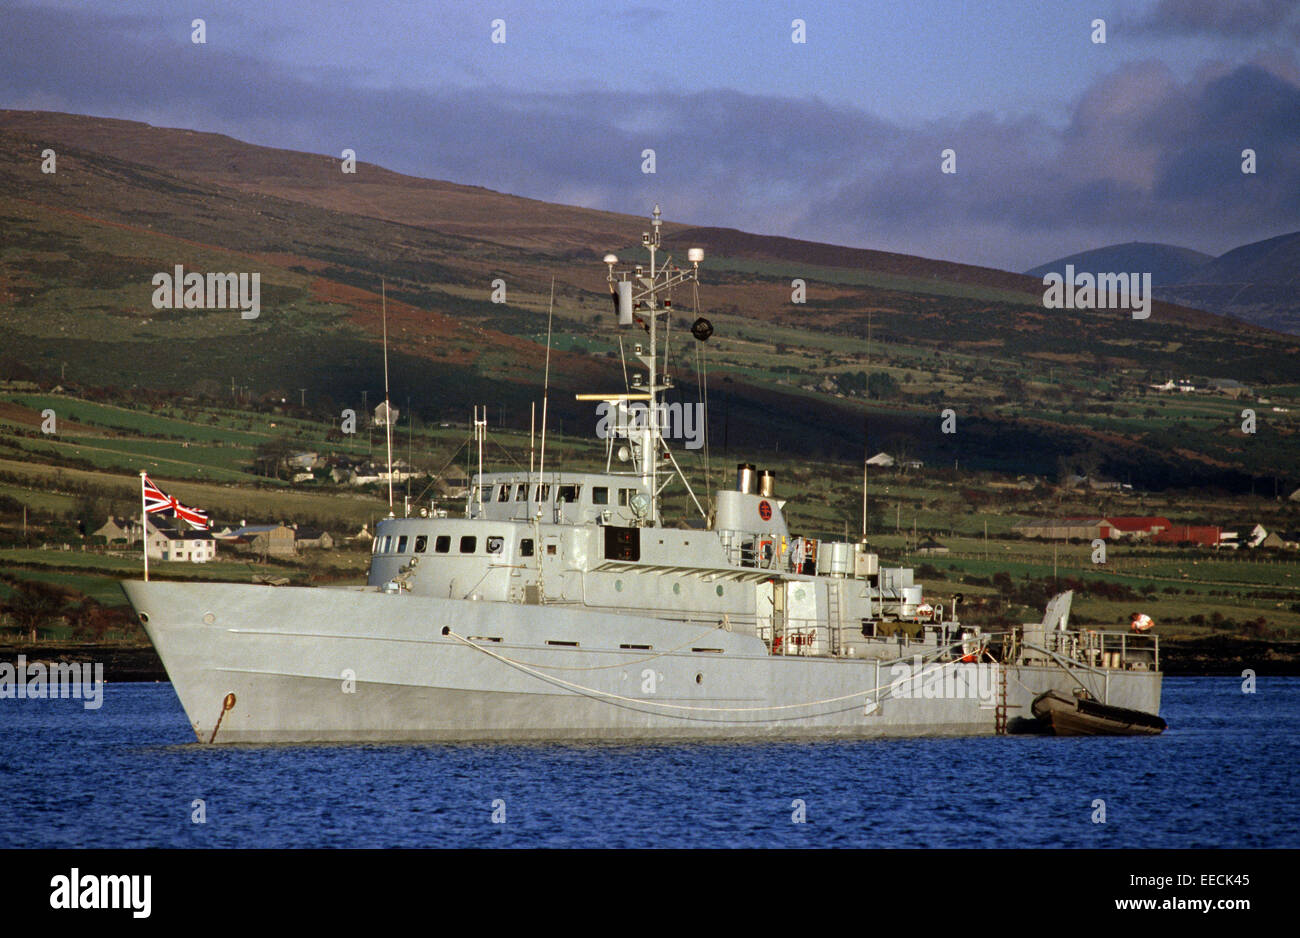 CARLINGFORD LOUGH, Co Down, Irlanda del Nord - novembre 1985. Royal Navy nave pattuglia in Carlingford Lough sul confine tra Irlanda del Nord e della Repubblica di Irlanda, durante i disordini, Irlanda del Nord. Foto Stock